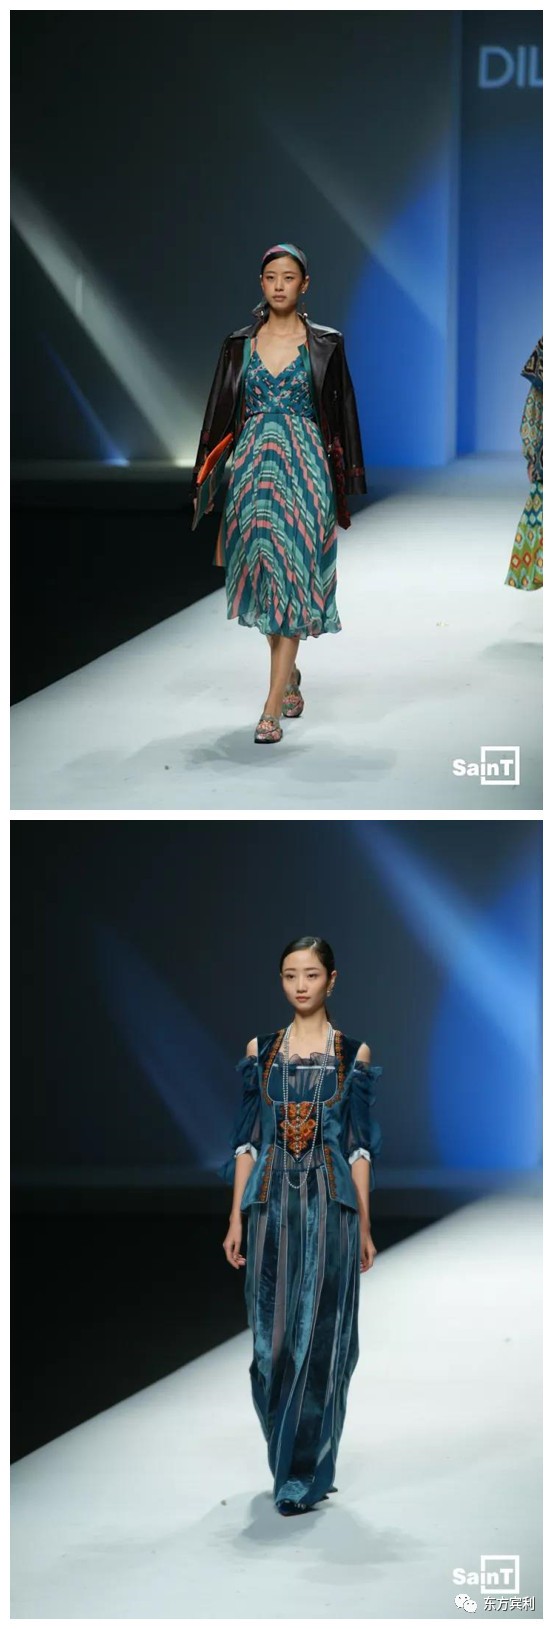 2018ss中国国际时装周| dilara zakir时装秀